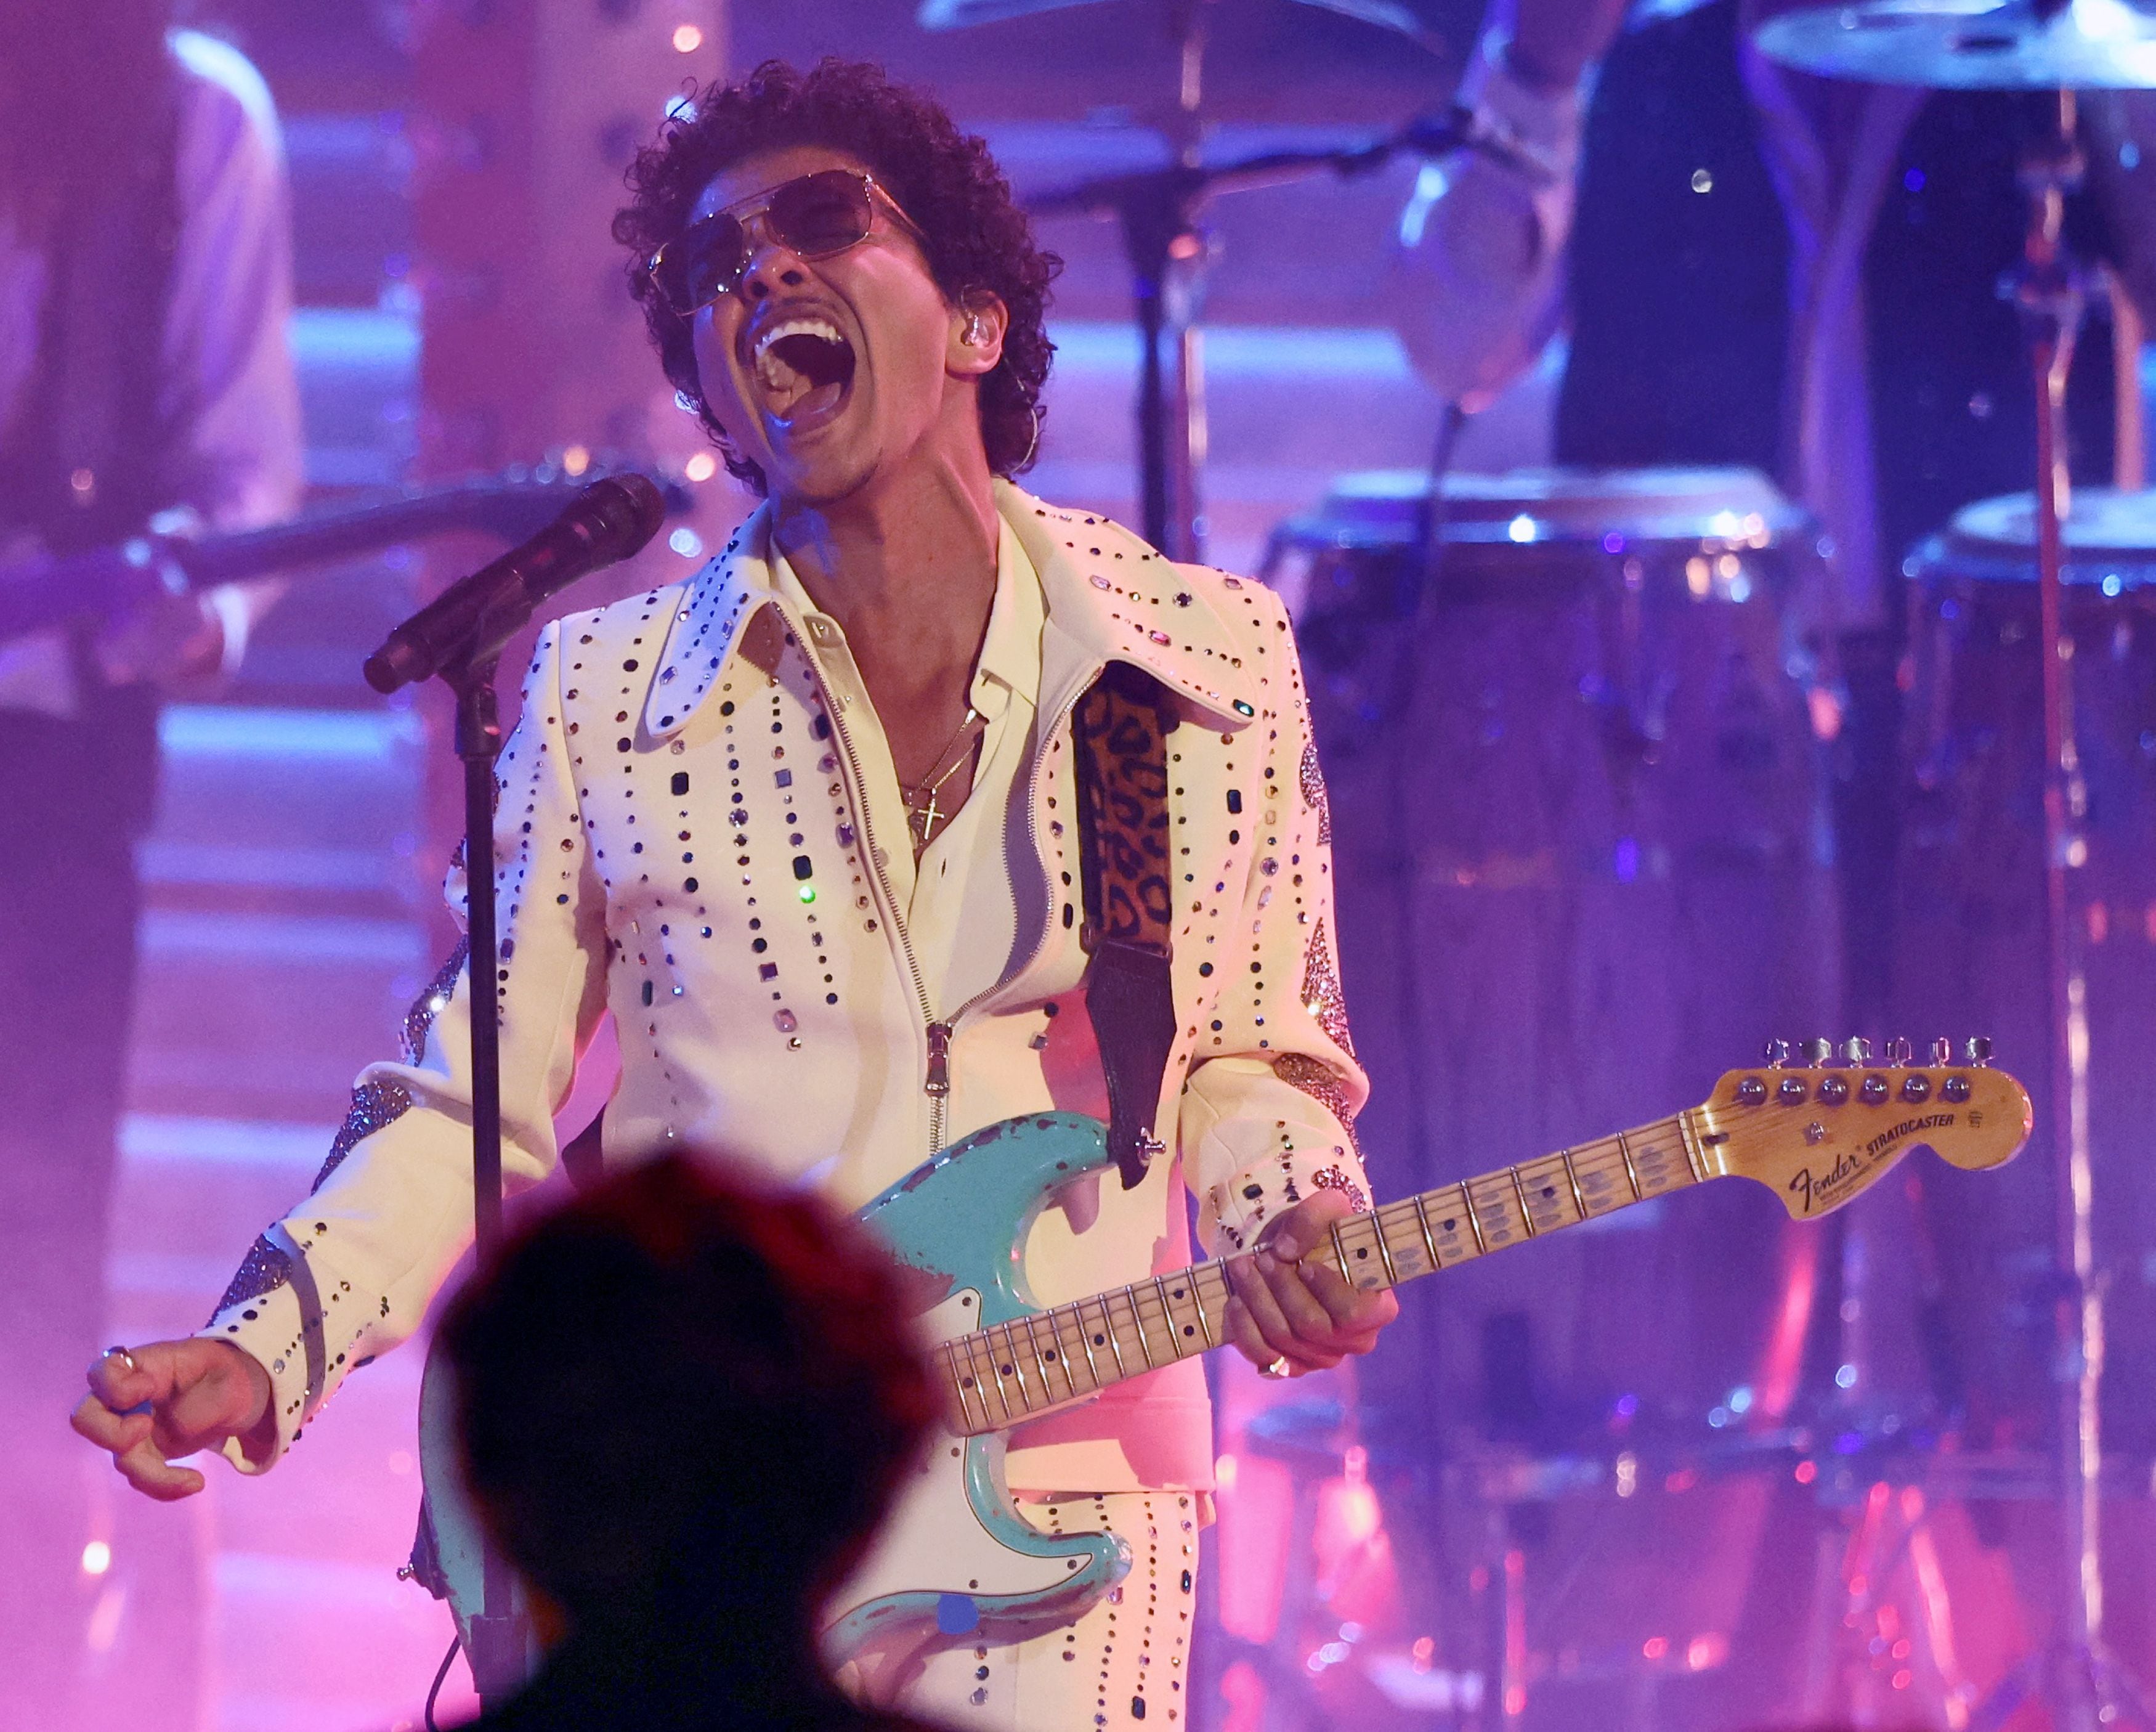 En 2010, Bruno Mars fue arrestado por posesión de cocaína en Las Vegas, un hecho que el cantante logró superar satisfactoriamente mediante un acuerdo legal. (REUTERS/Mario Anzuoni)